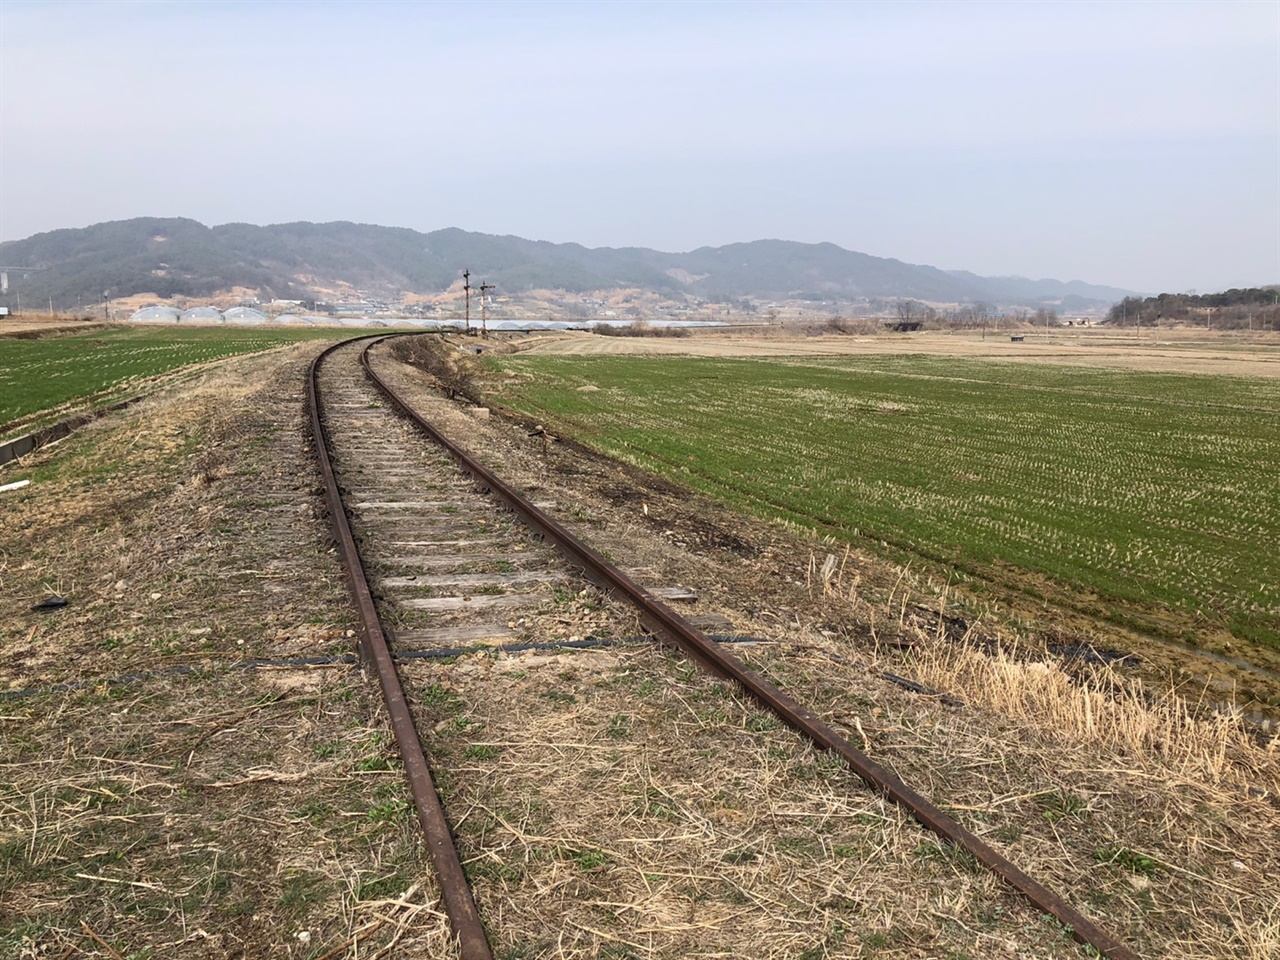 서도역 철길2 70년 동안 수많은 열차가 오고 갔던 철길, 평행선 레일이 풍경의 주인공이 되었다.